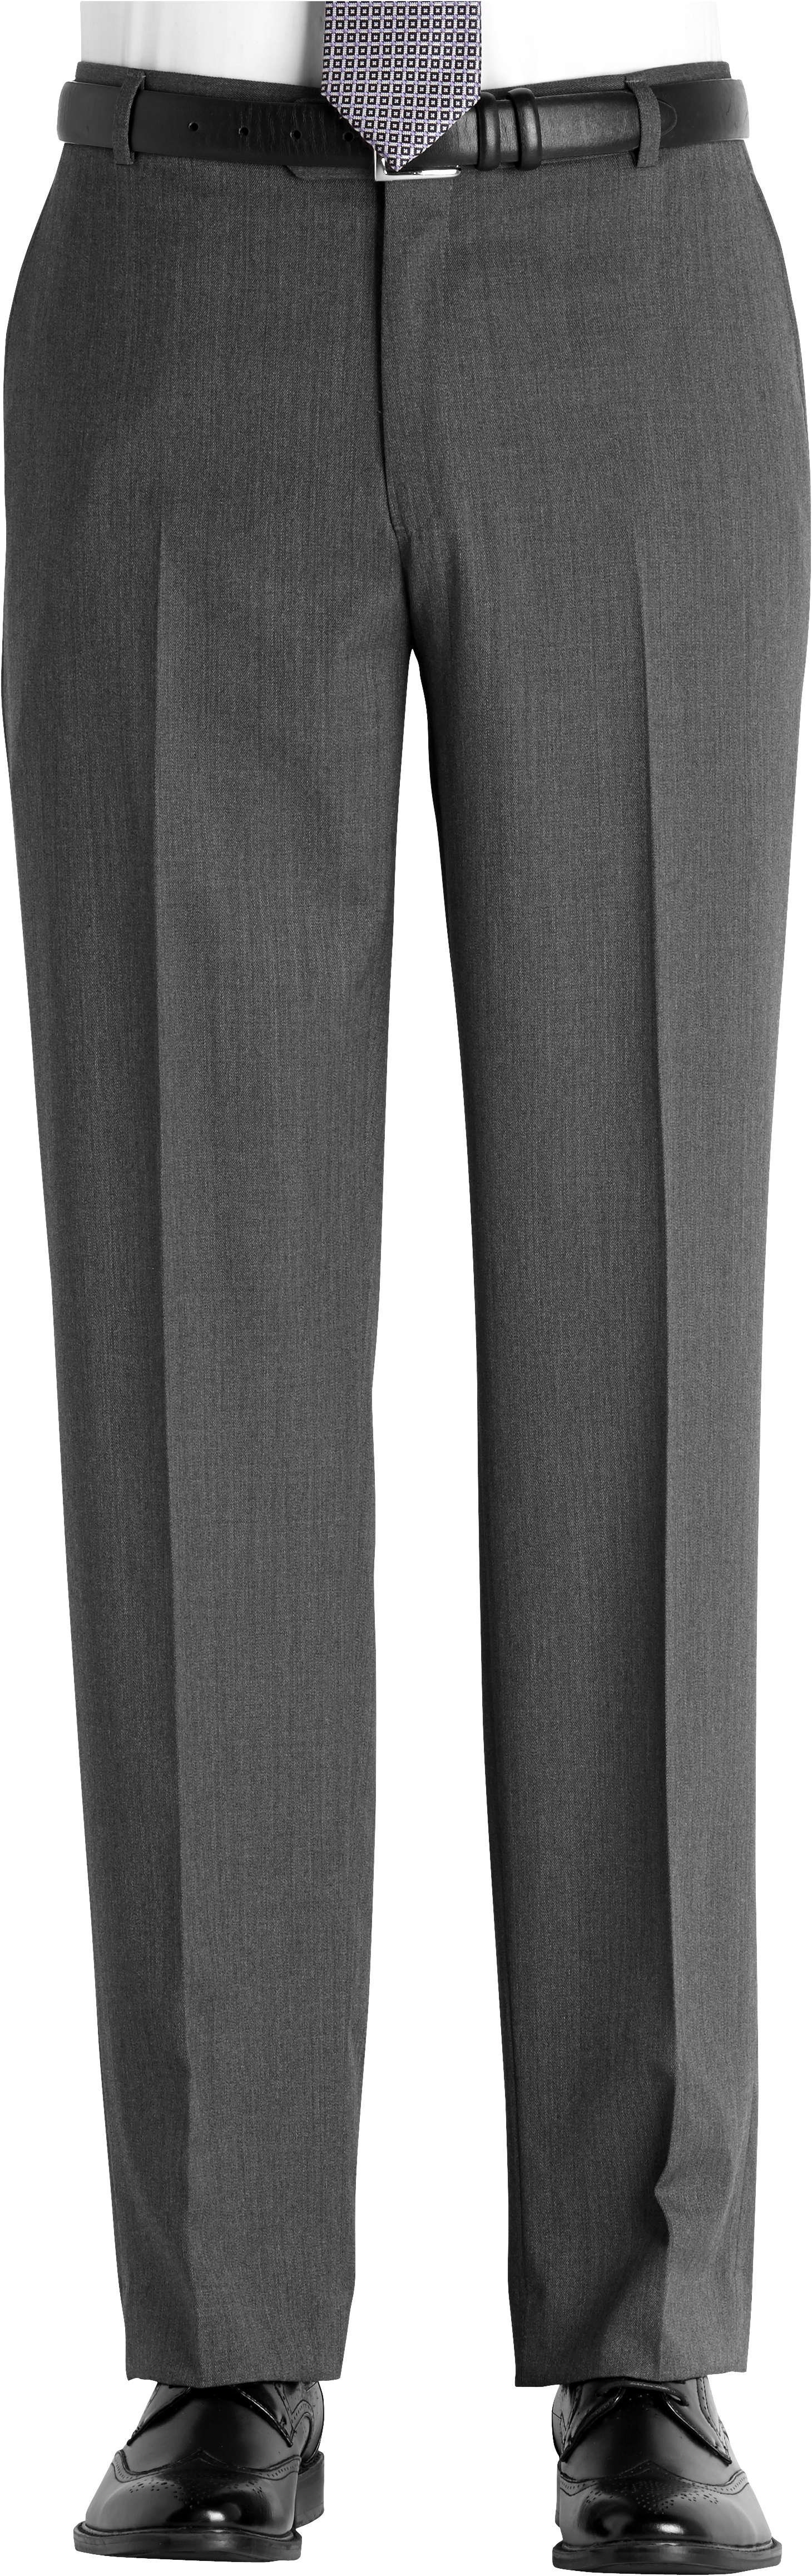 Joseph & Feiss Medium Gray Classic Fit Long Rise Pants - Men's Pants ...